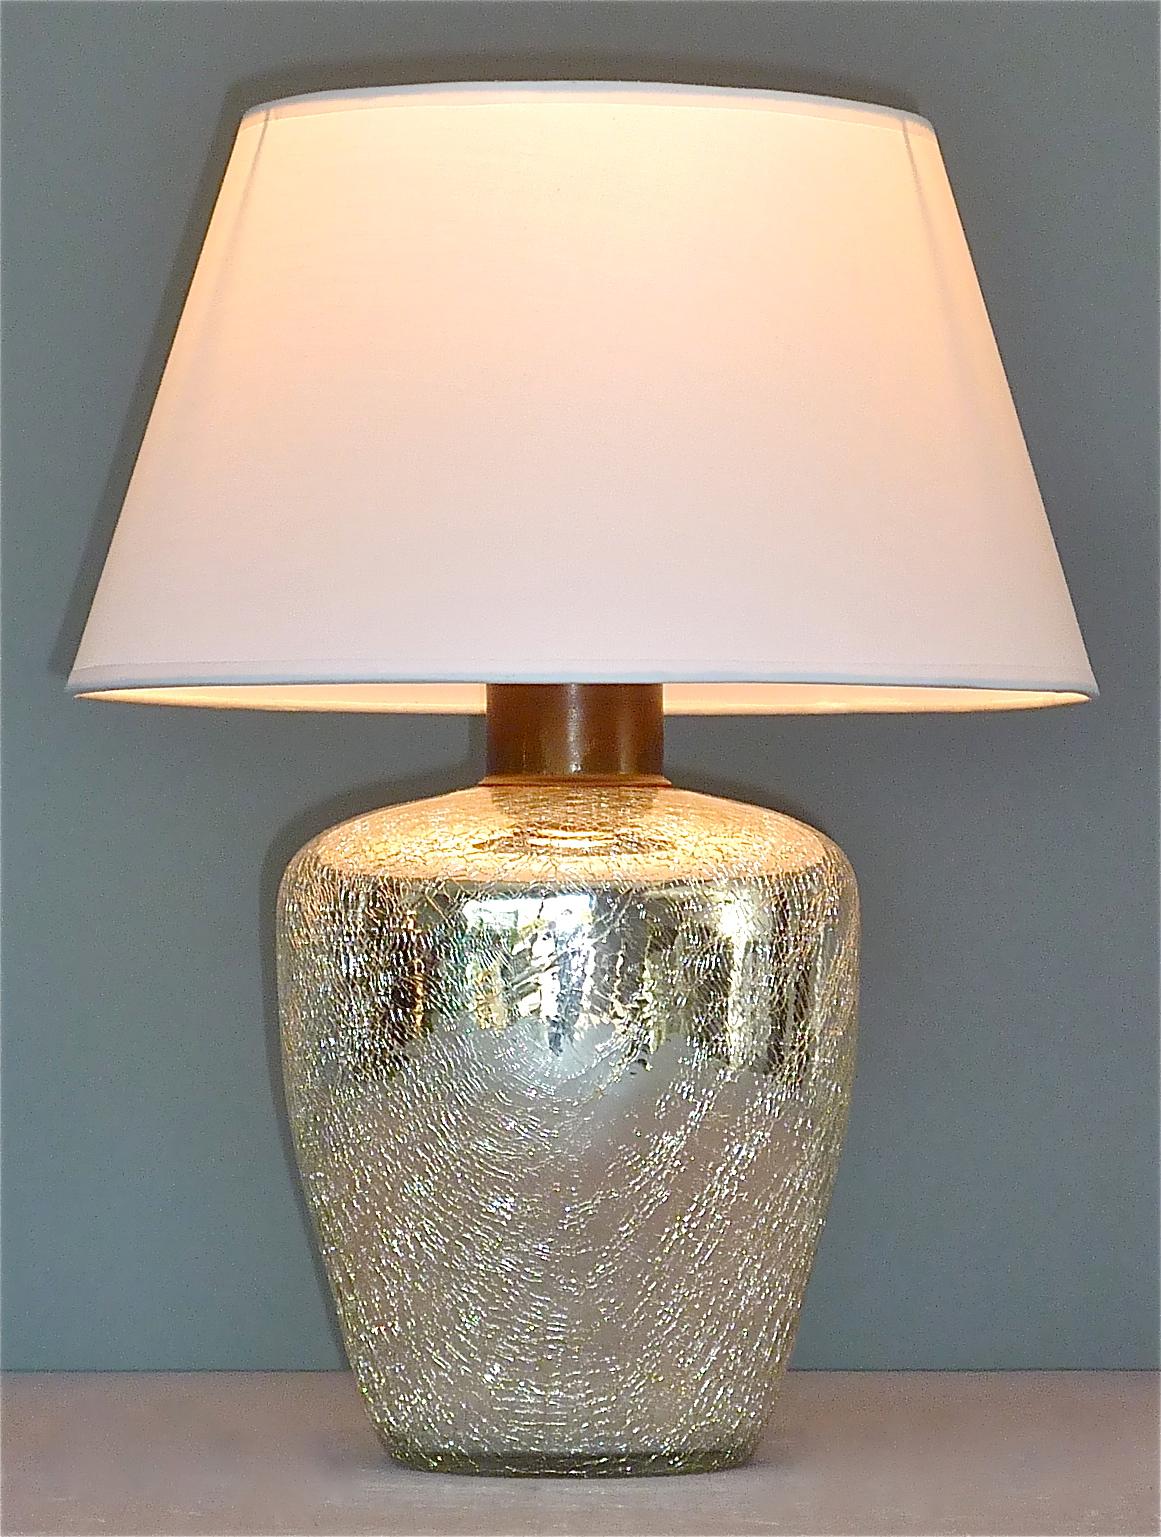 Rare lampe de table Art Déco Modernisme en verre épais argenté miroir avec finition effet craquelé qui peut être daté France circa 1930s. Il s'agit d'une fixation en métal patiné avec un raccord en plastique noir pour une ampoule à vis E 27 à